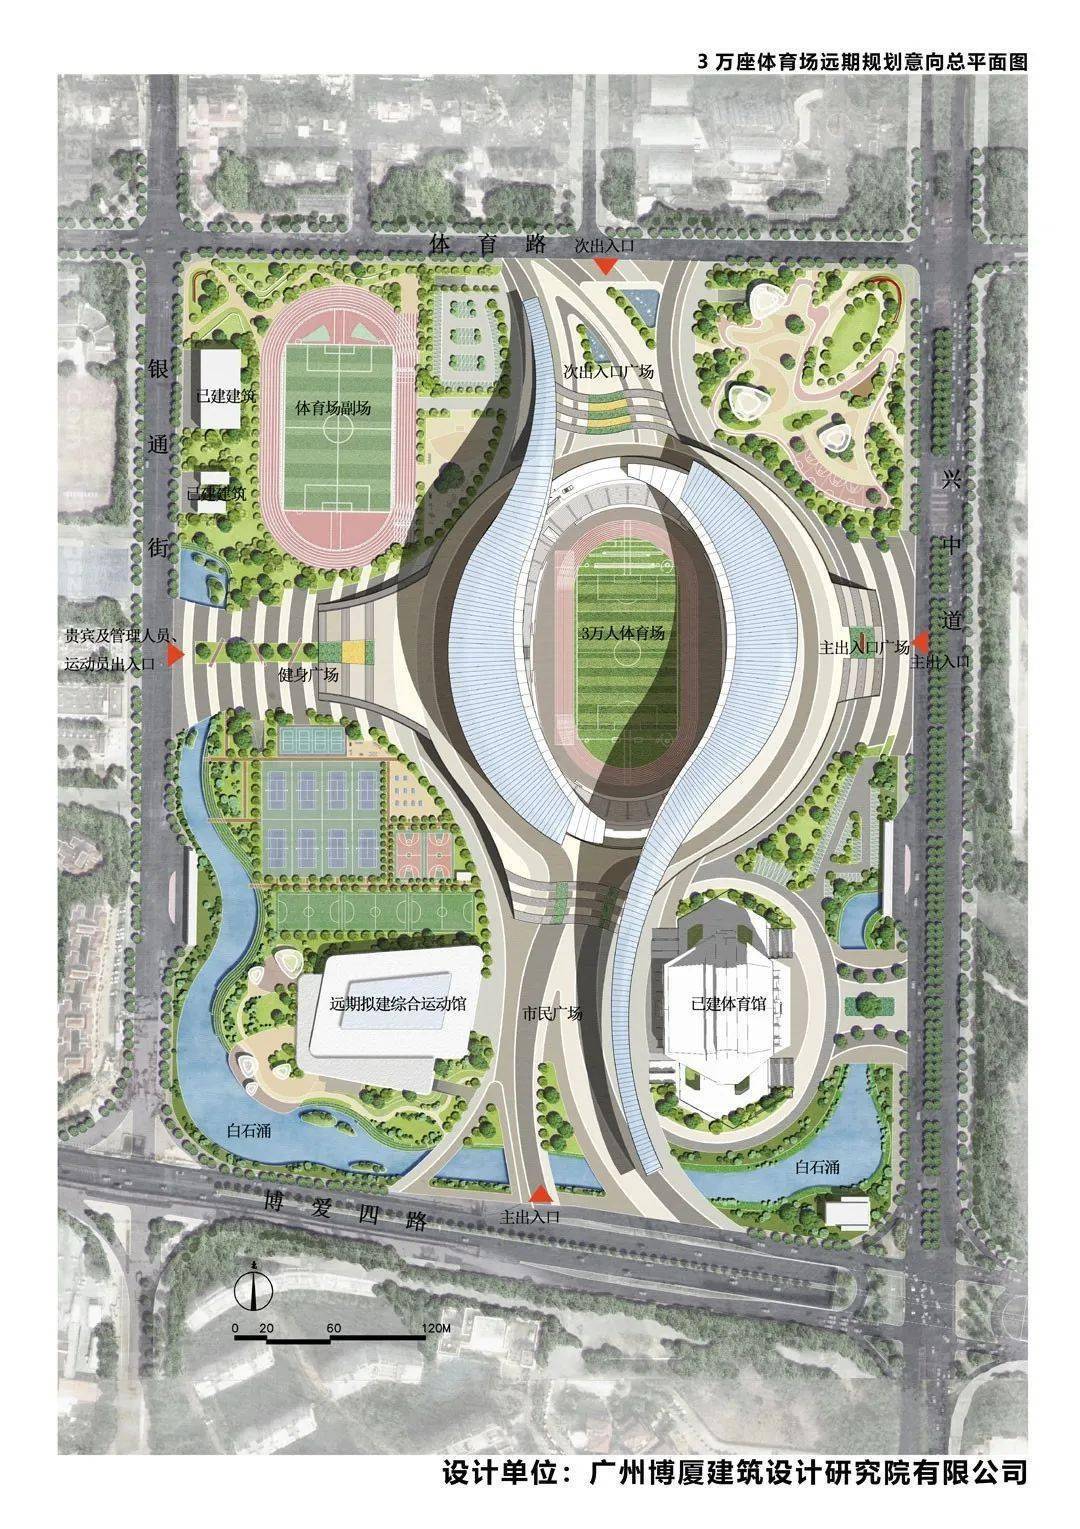 改建设计方案一(3万座体育场方案近期平面规划图)规划改动白石涌水系